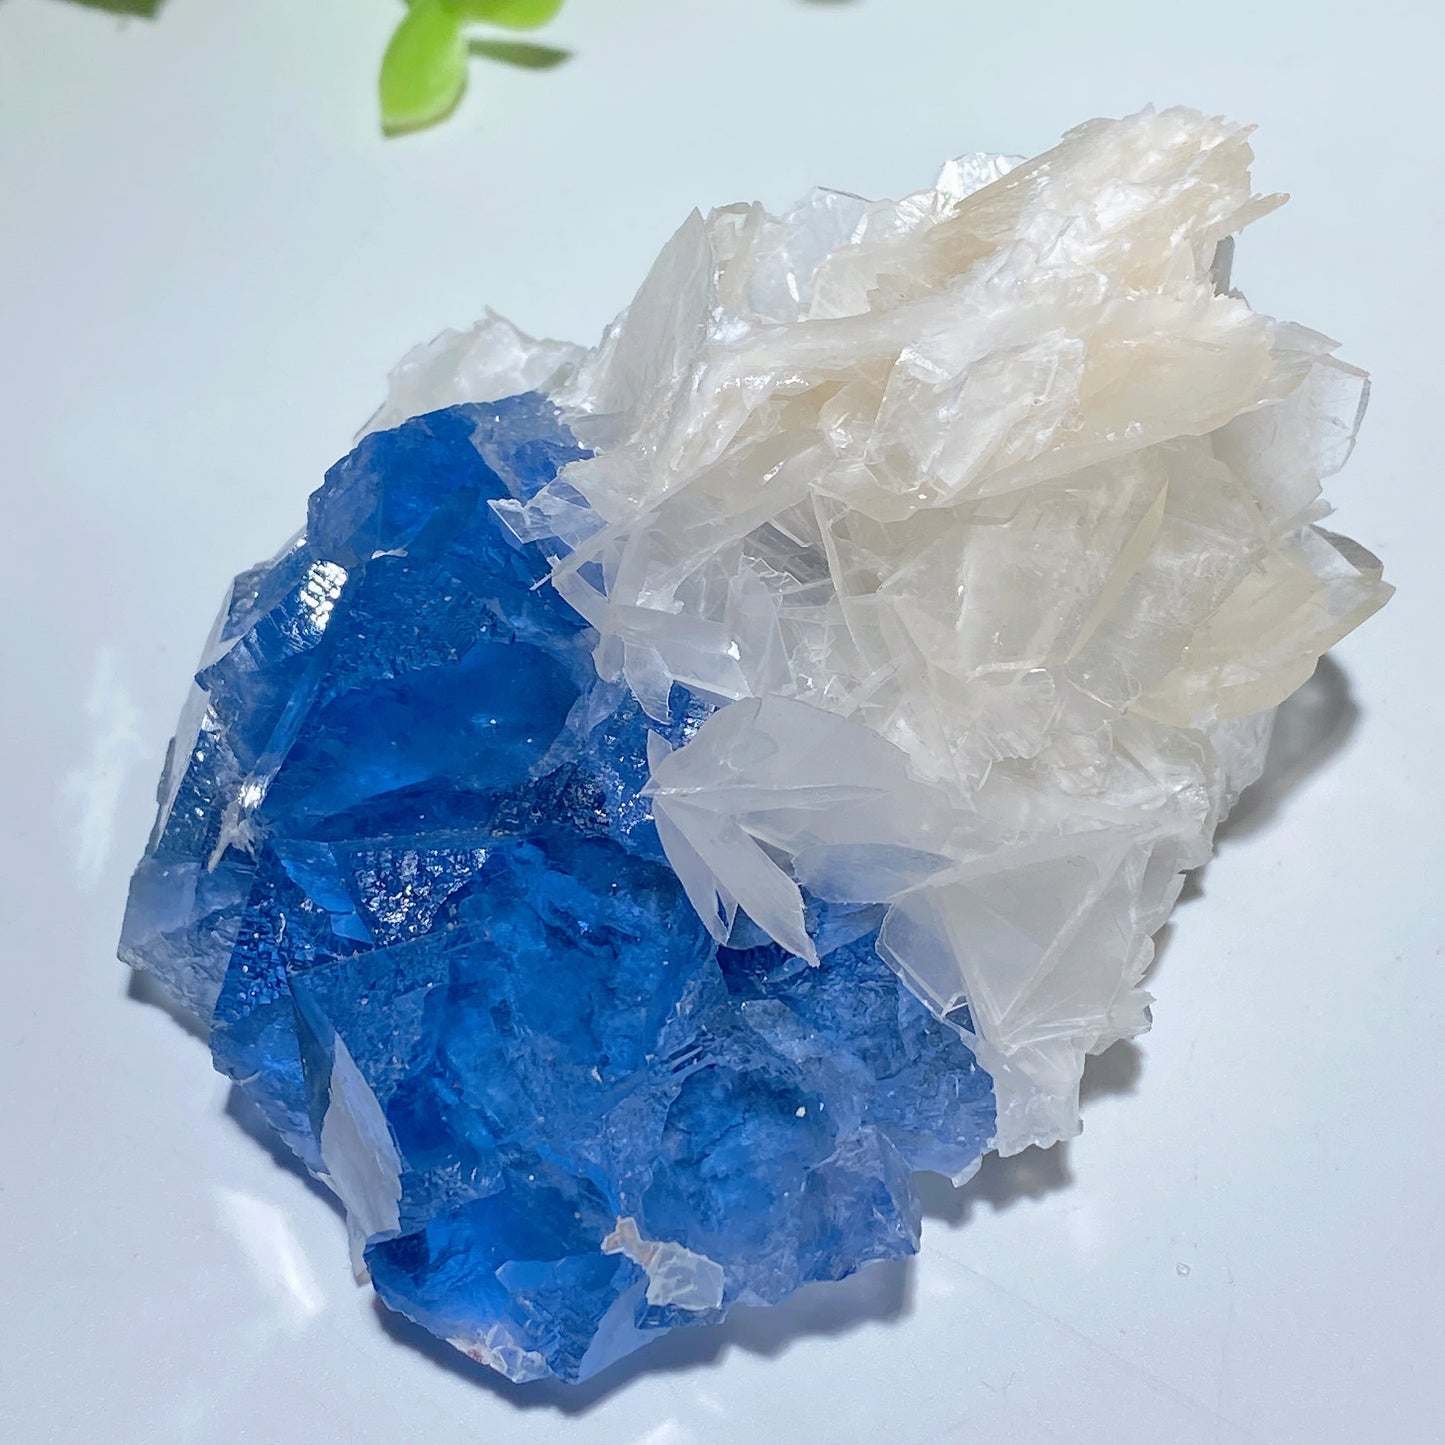 Unique Rare Fluorite Specimen Grow with Calcite